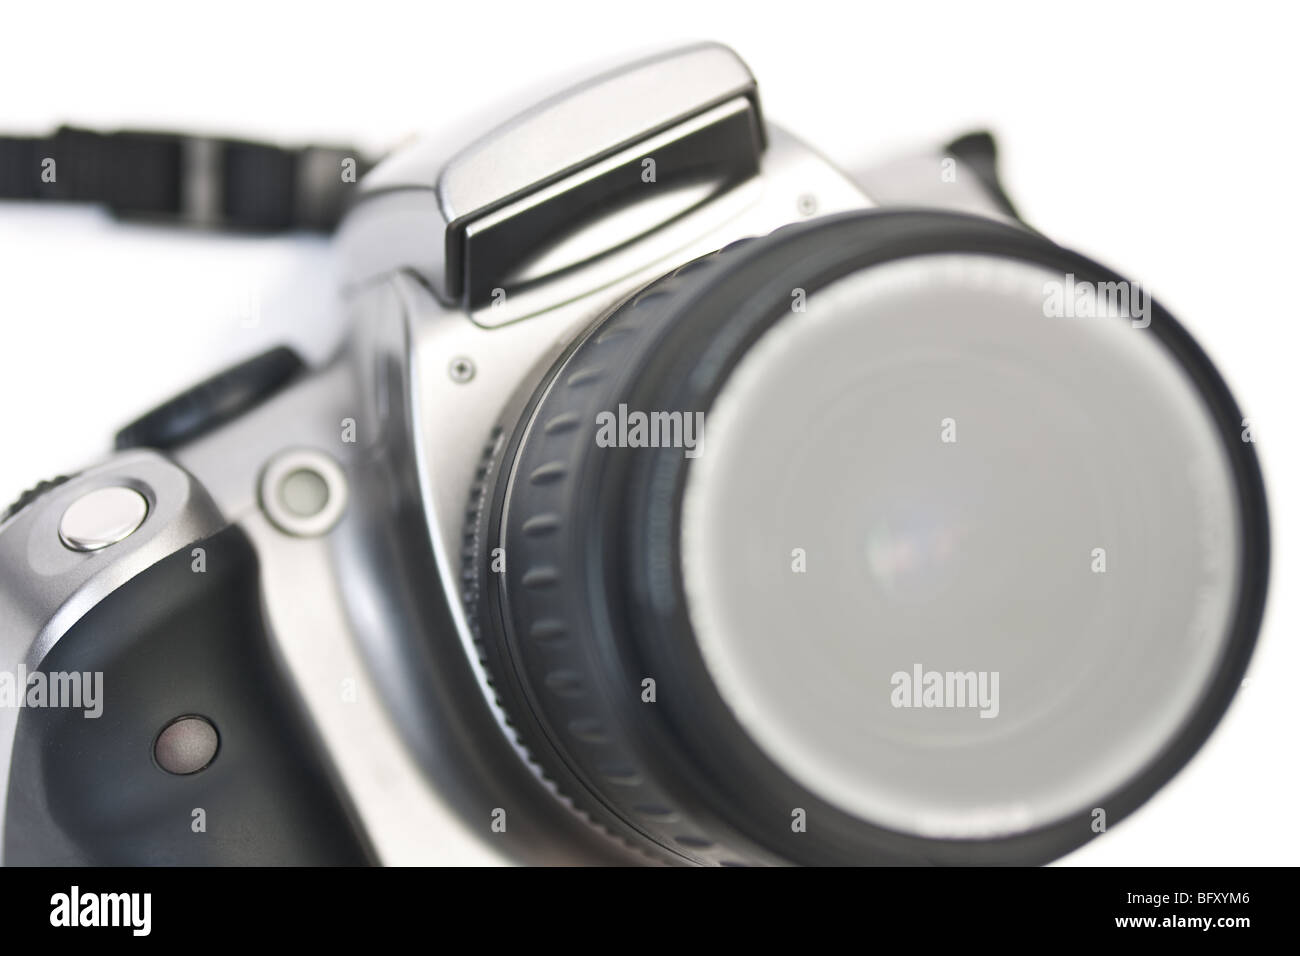 Un primo piano di una fotocamera reflex digitale, shot nella lente, con focus sull'impugnatura, isolato su bianco. Foto Stock